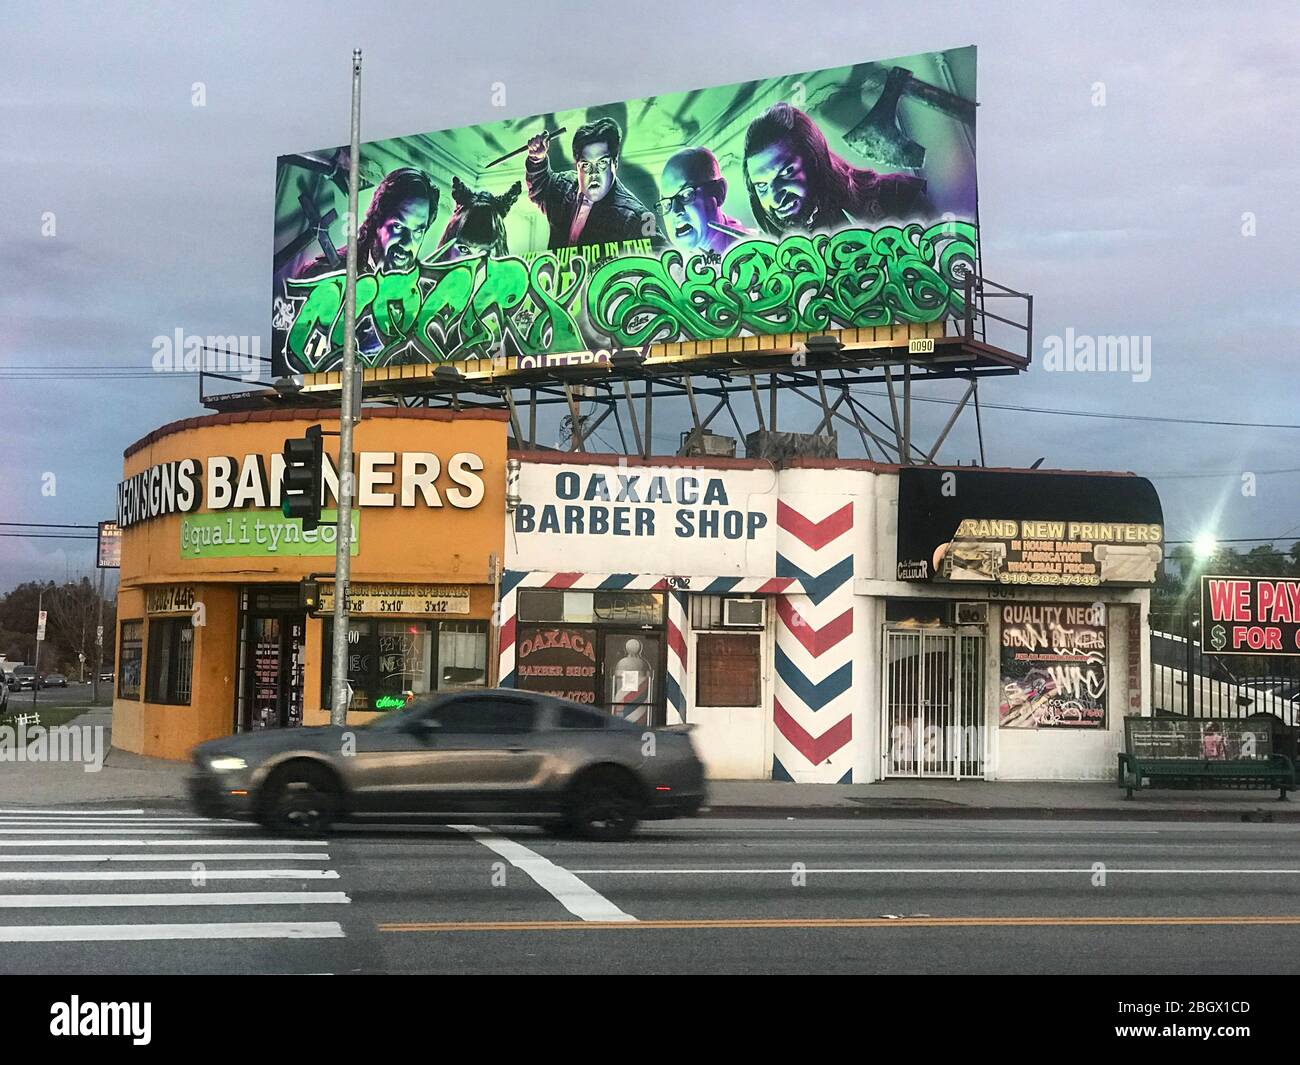 Negozi ad angolo su la Cienega Blvd. A Los Angeles con un negozio di cartelli e banner, un barbiere messicano e un tabellone con graffiti a Los Angeles, California Foto Stock